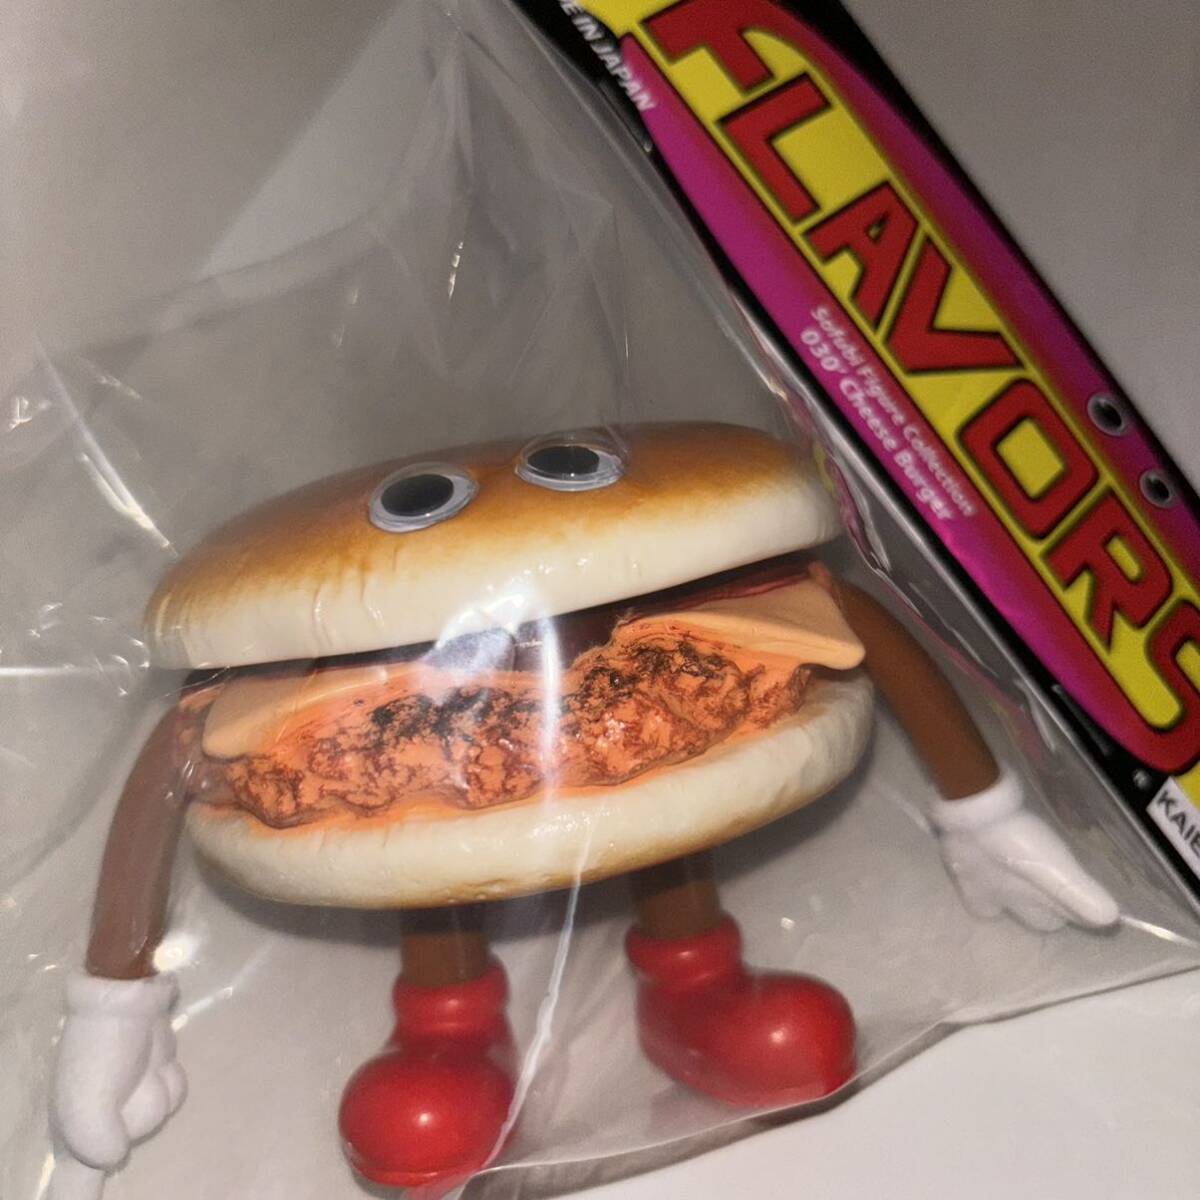 フレーバーズ 033 テリヤキバーガー Teriyaki Burger / FLAVORSの画像1